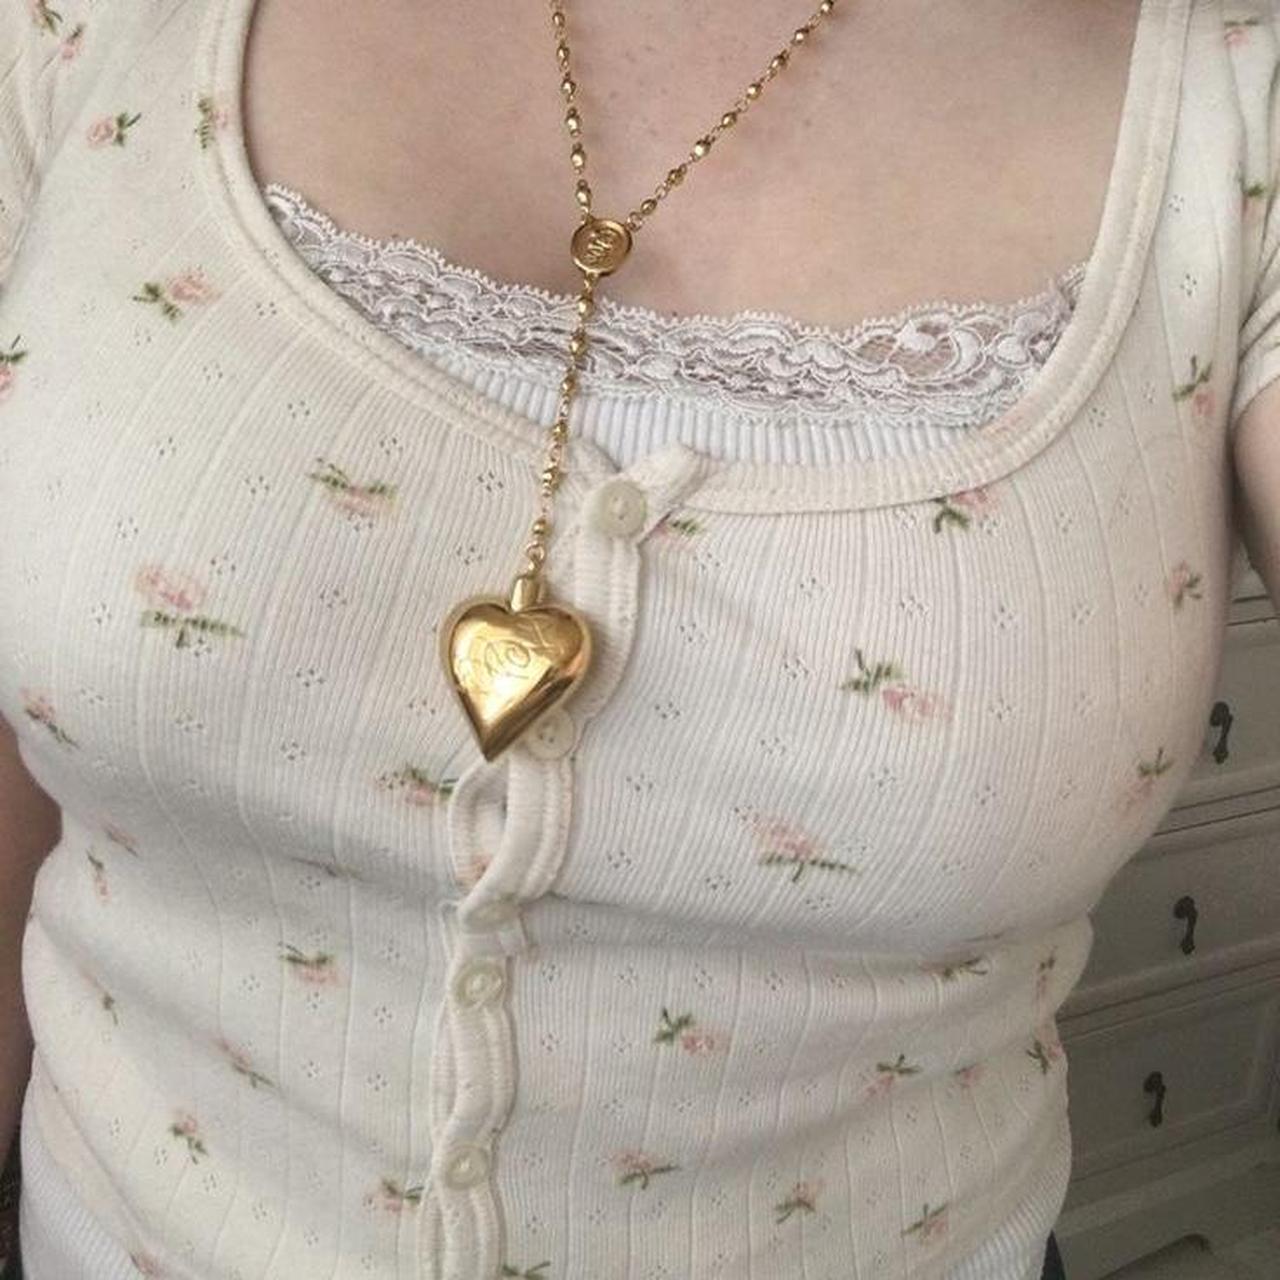 Amazon.com: Lana Del Rey Necklace Heart With Spoon